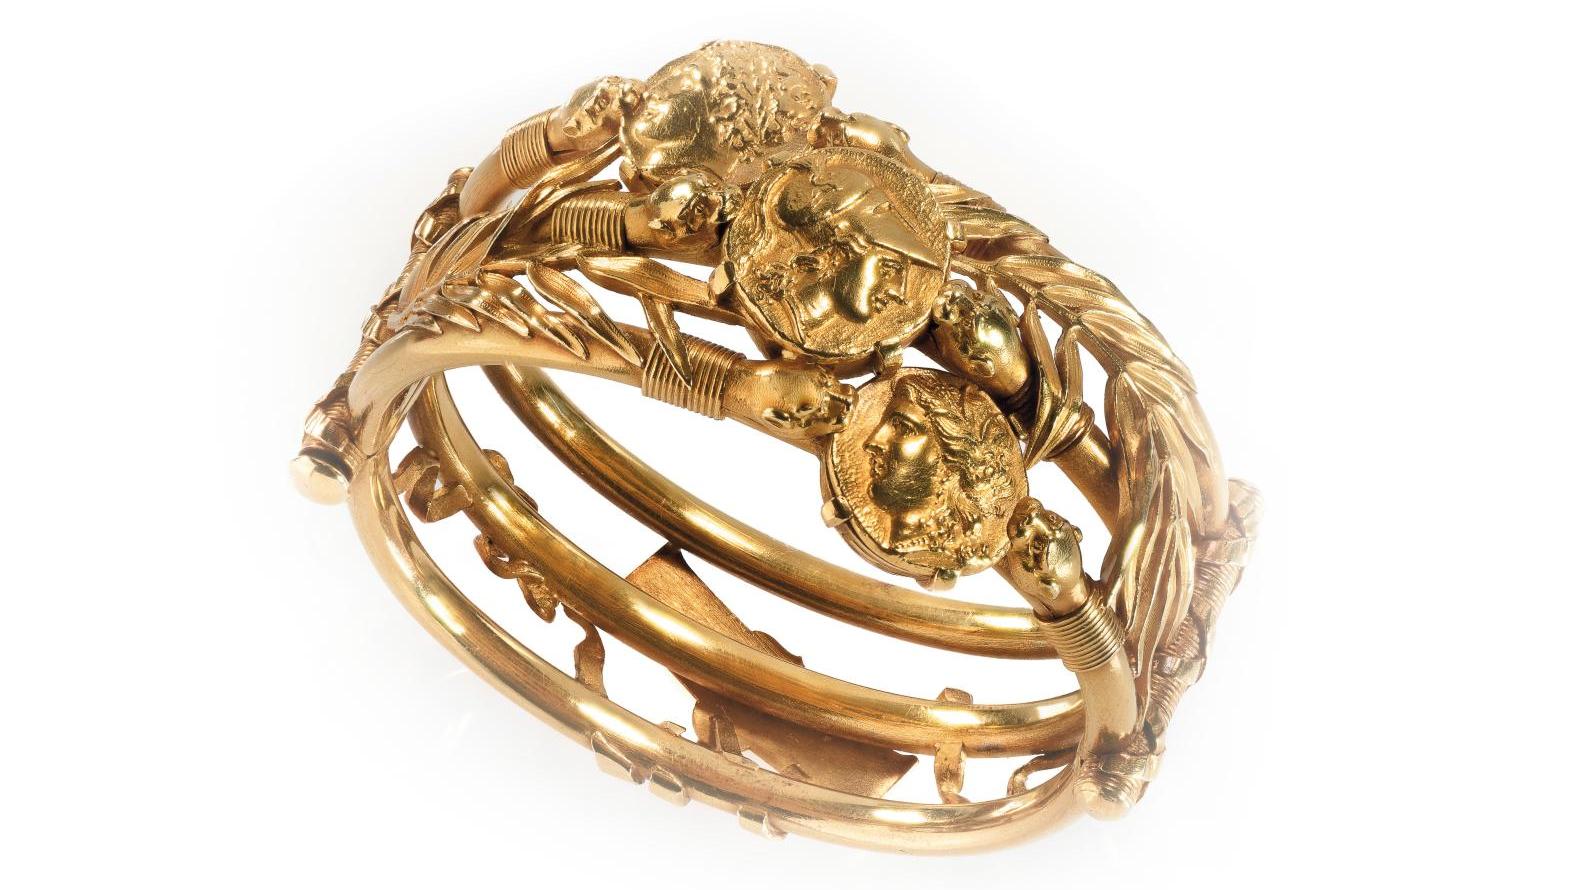 Lucien Falize (1839-1897) et Germain Bapst (1853-1921), bracelet rigide en or jaune... L’Antiquité gréco-romaine inspire Bapst & Falize